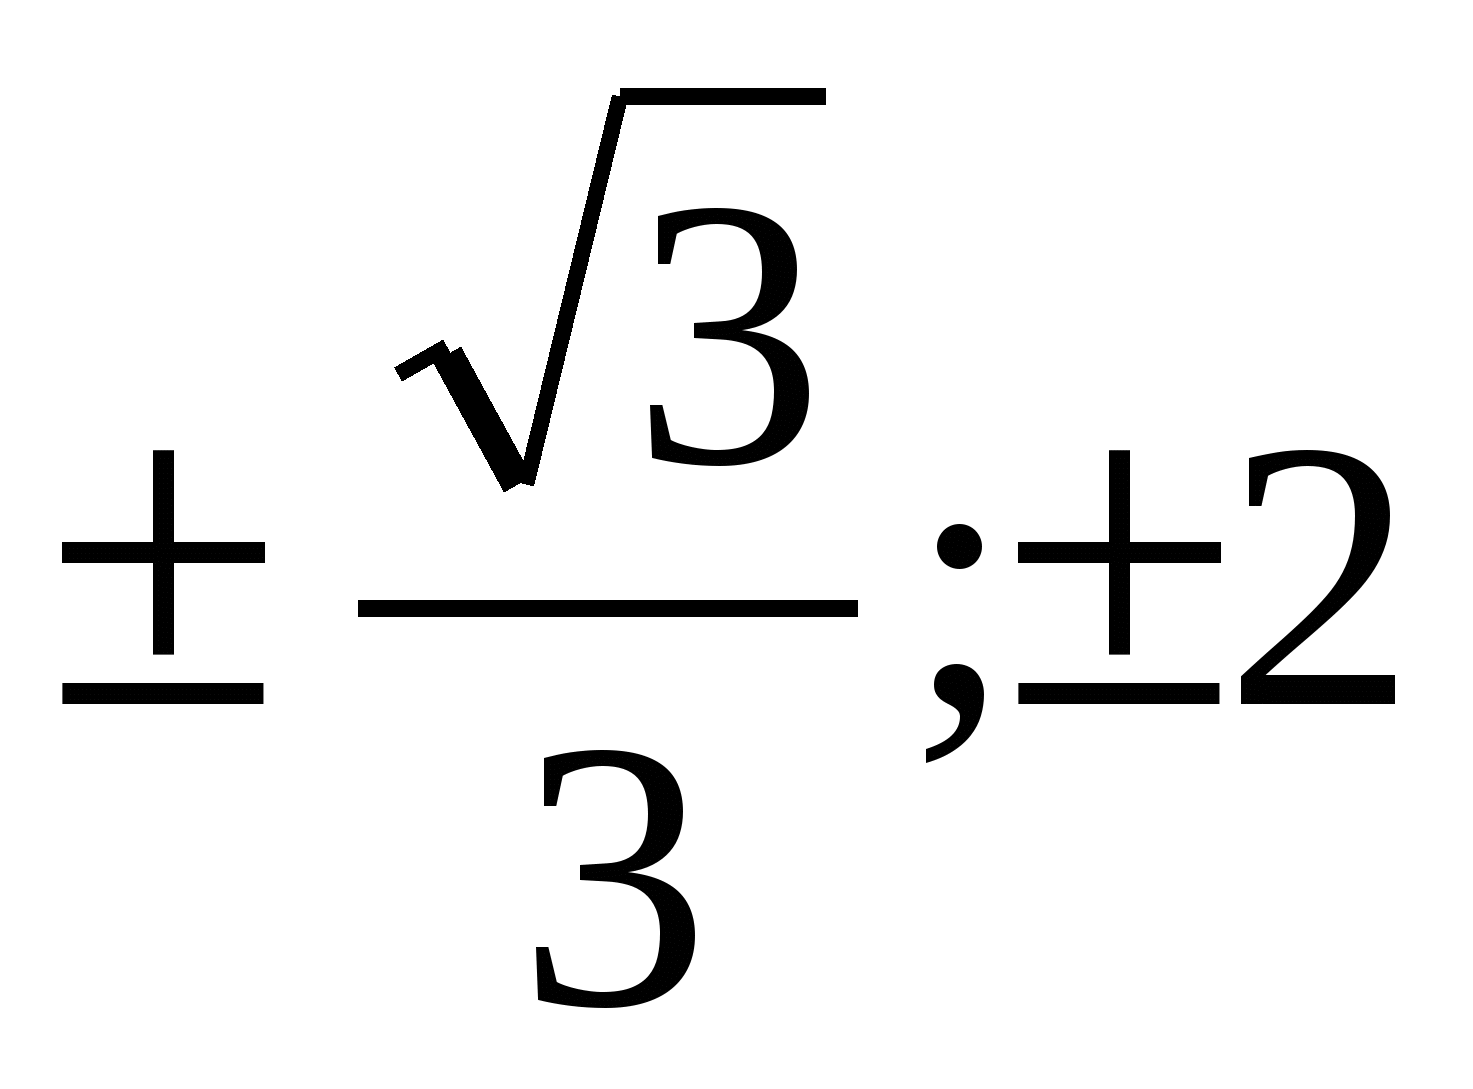 Уравнения. Практический материал к ОГЭ по математике в 9 классе.